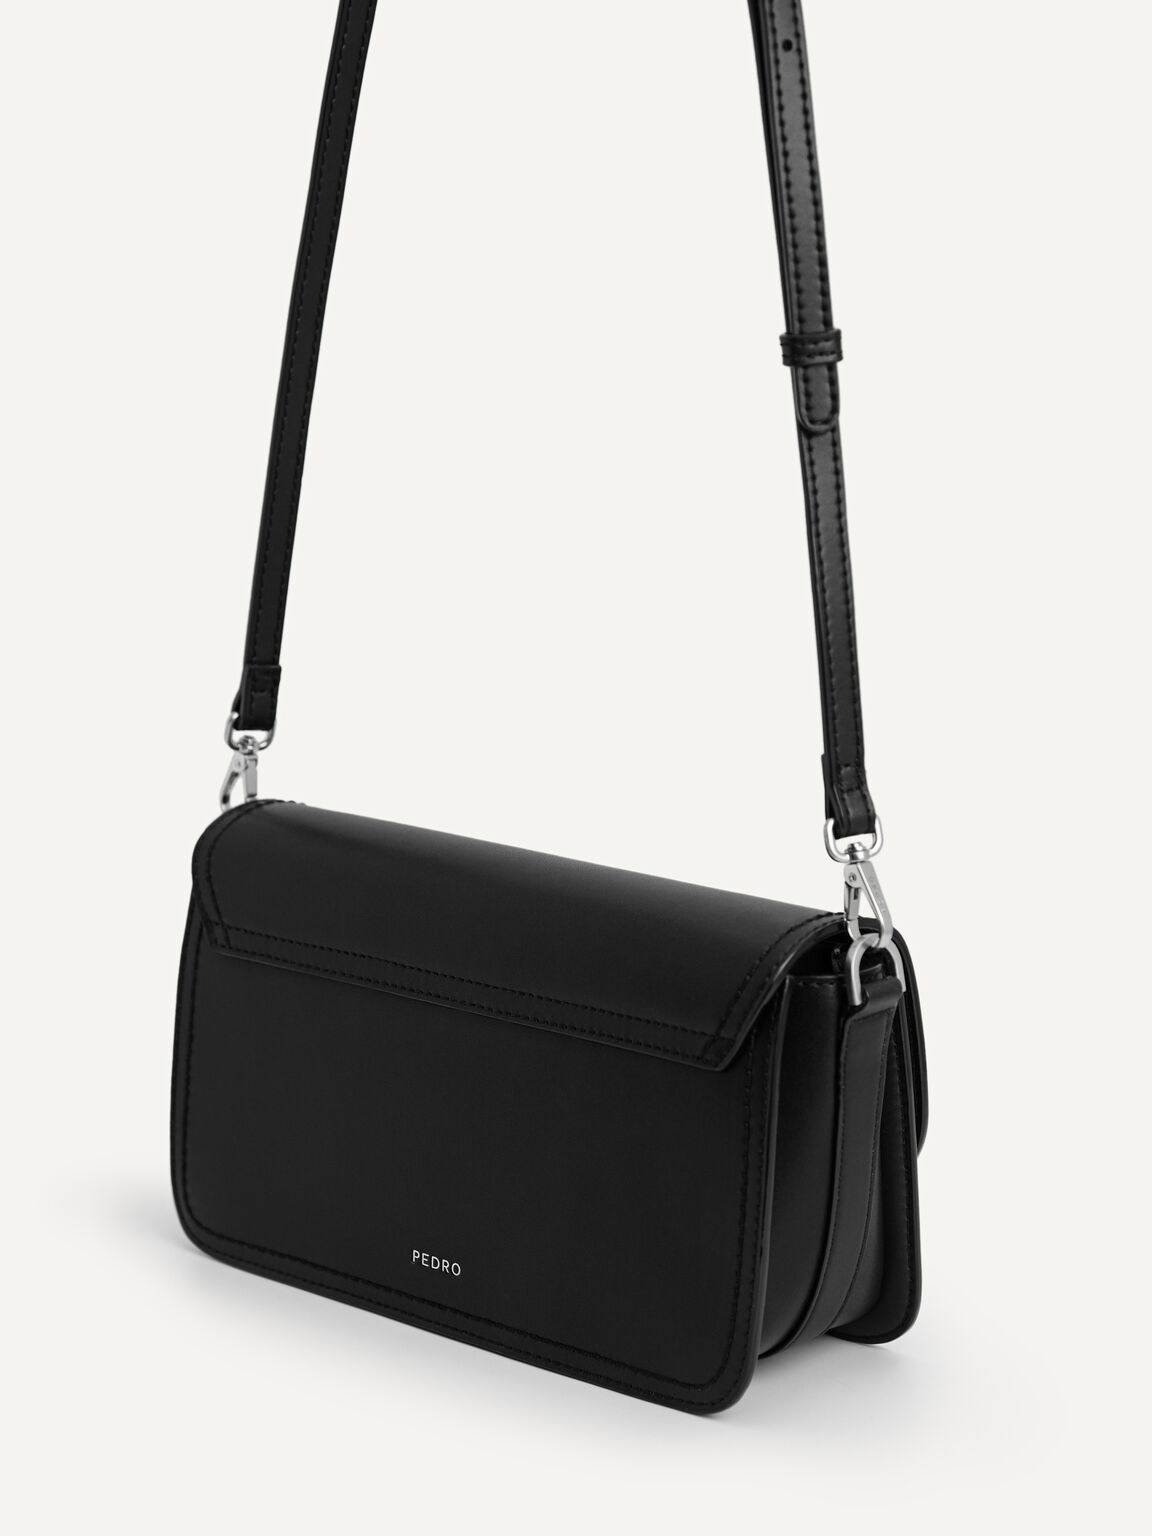 Monochrome Leather Shoulder Bag, Black, hi-res